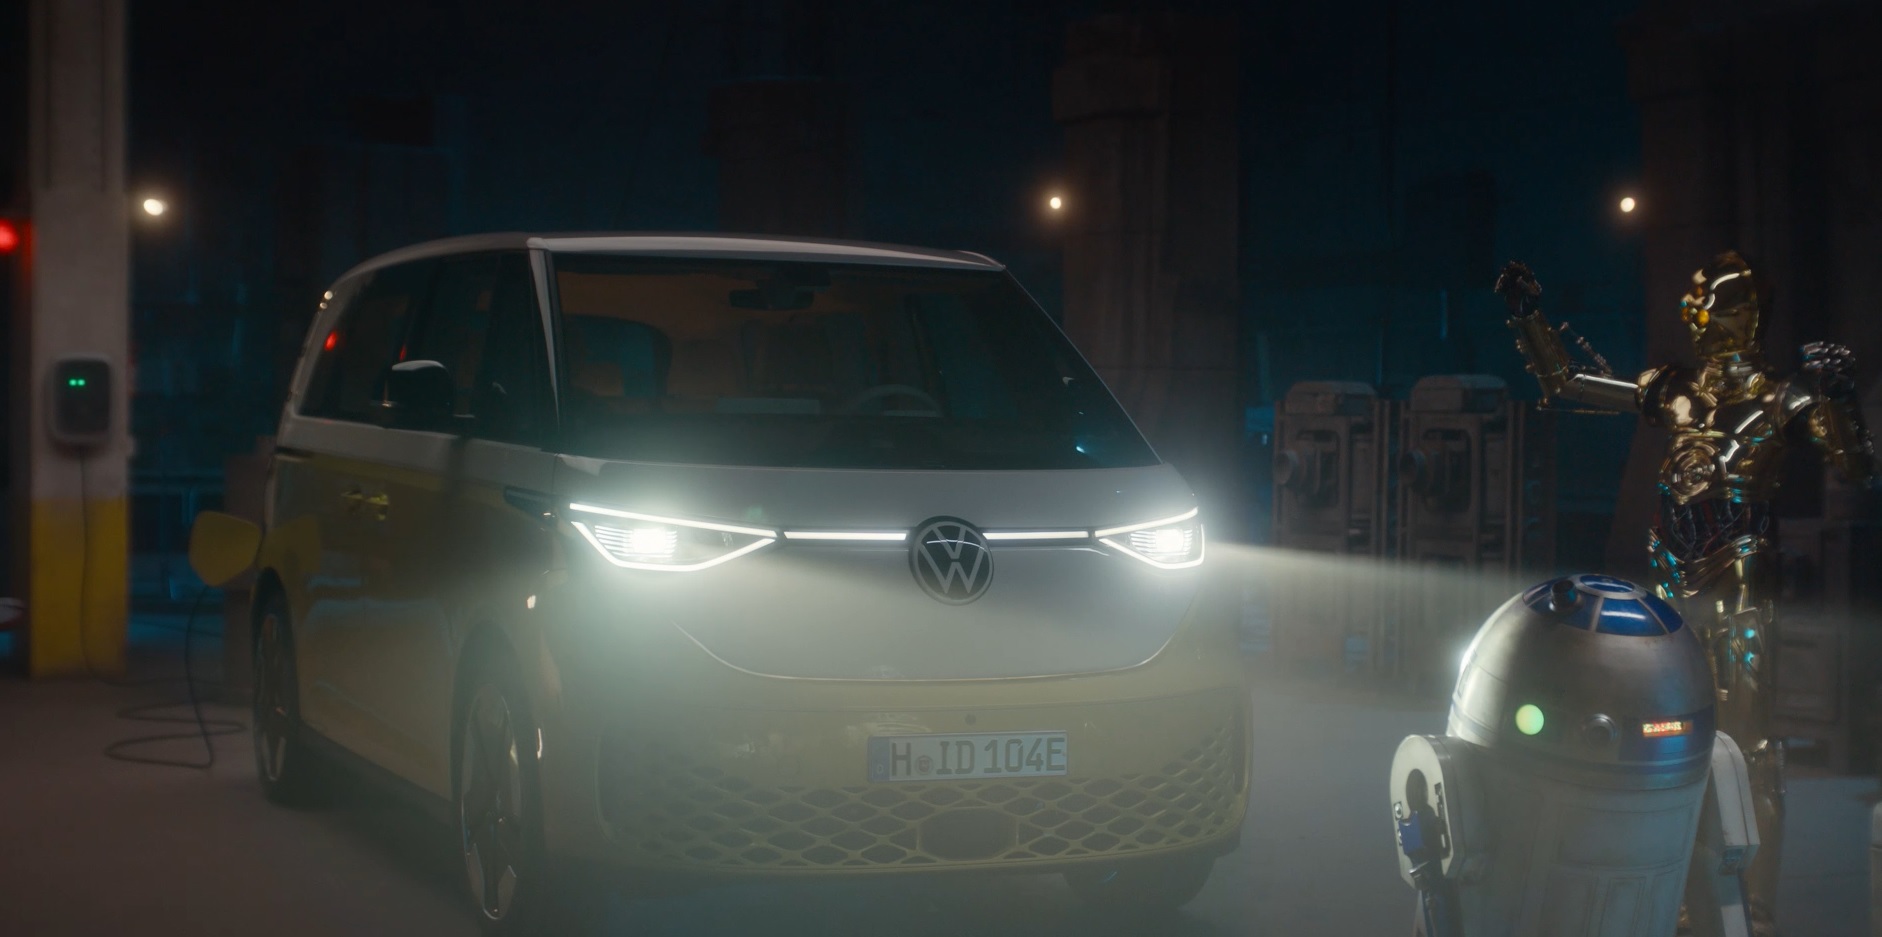 VW une forças com série de Star Wars para promover nova Kombi elétrica